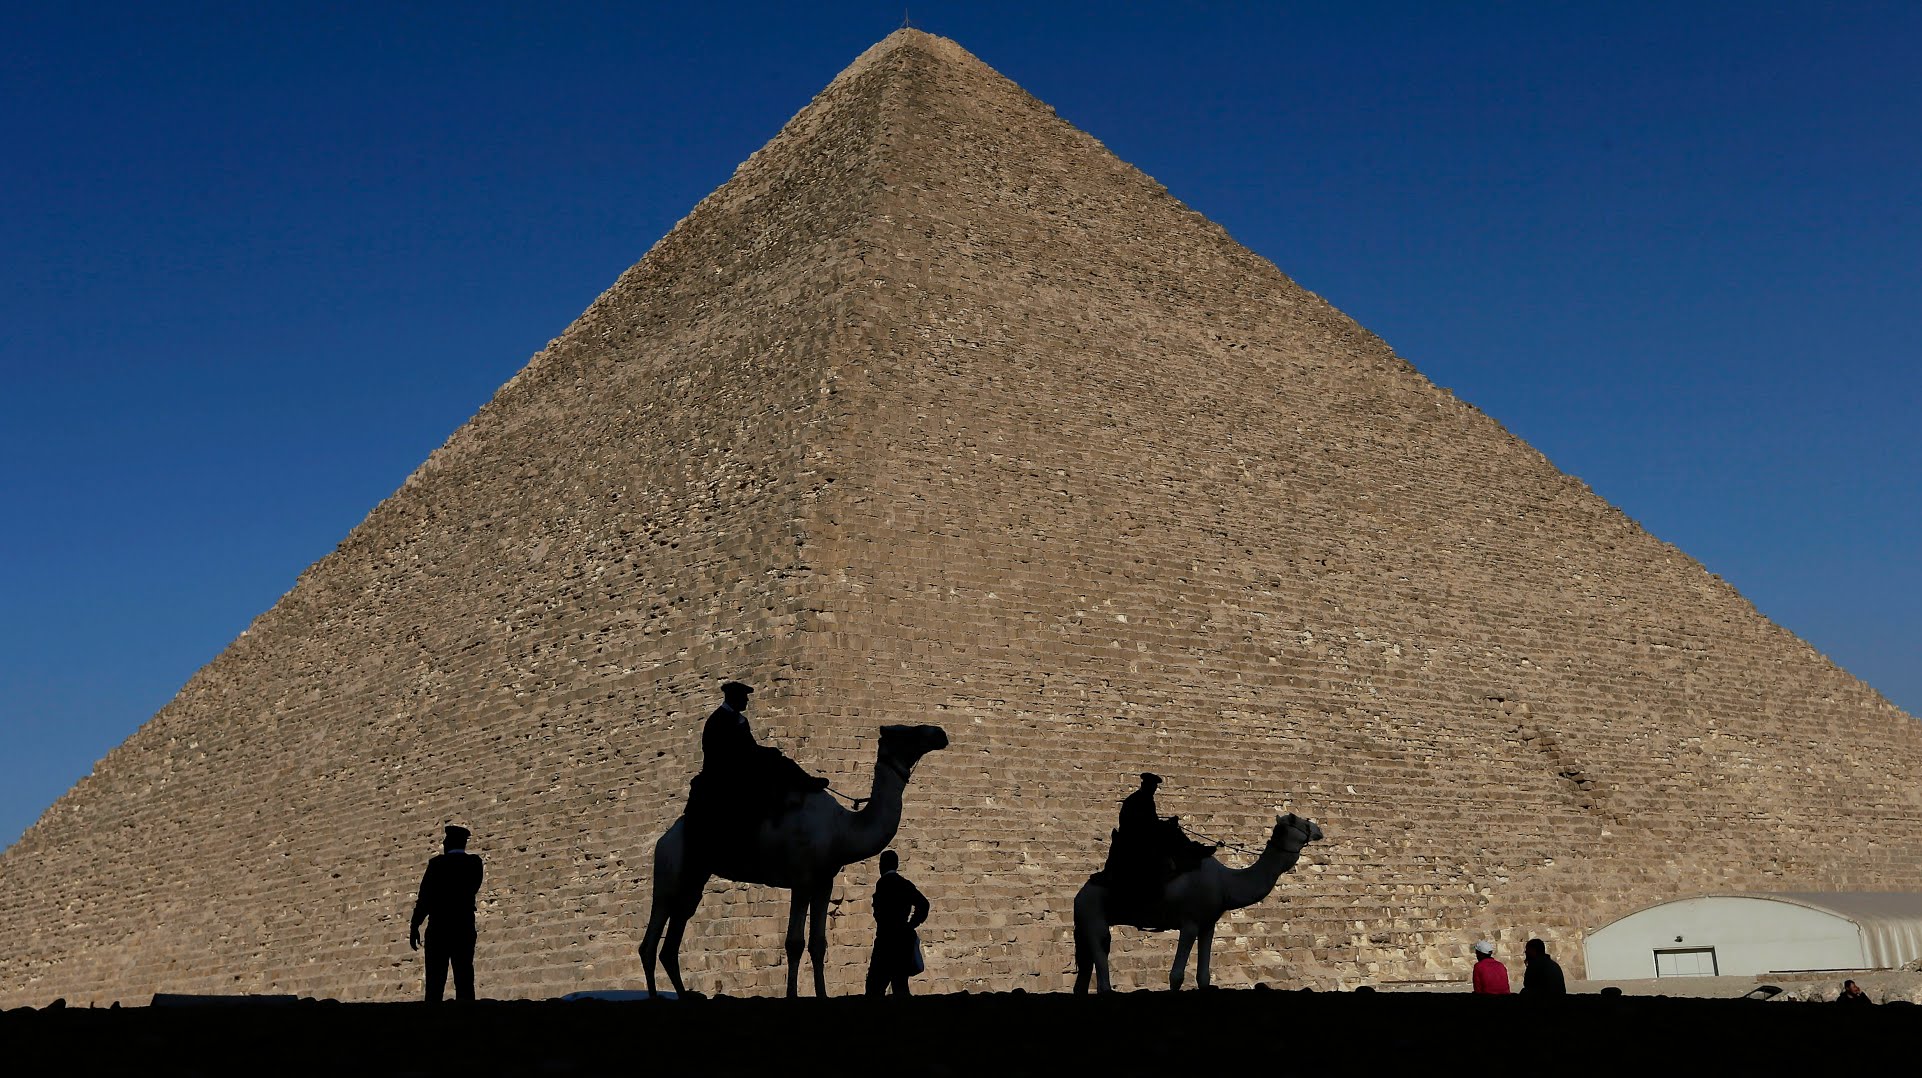 ARCHIVOS - Siluetas de policías se proyectan sobre la Gran Pirámide de Giza, Egipto, 12 de diciembre de 2012. Egipto develó el jueves 2 de marzo de 2023 una cámara de nueve metros de longitud dentro de la Gran Pirámide de Giza, la primera que se descubre en la cara norte de la estructura. (AP Foto/Hassan Ammar, File)